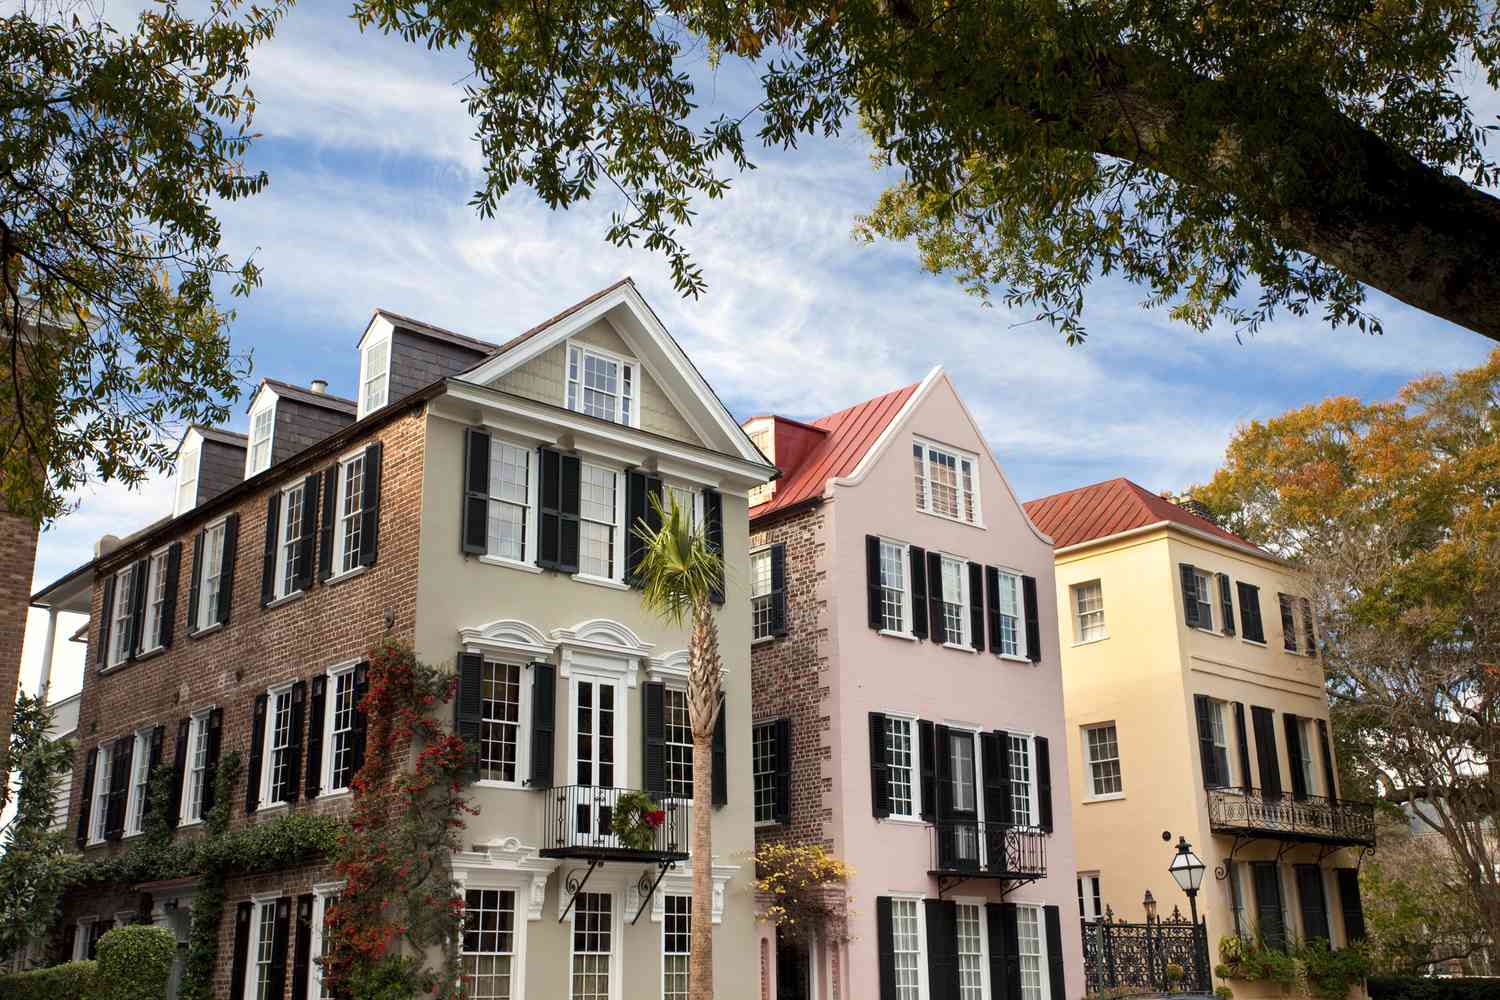 Casas adosadas de Charleston con paredes pintadas y de ladrillo